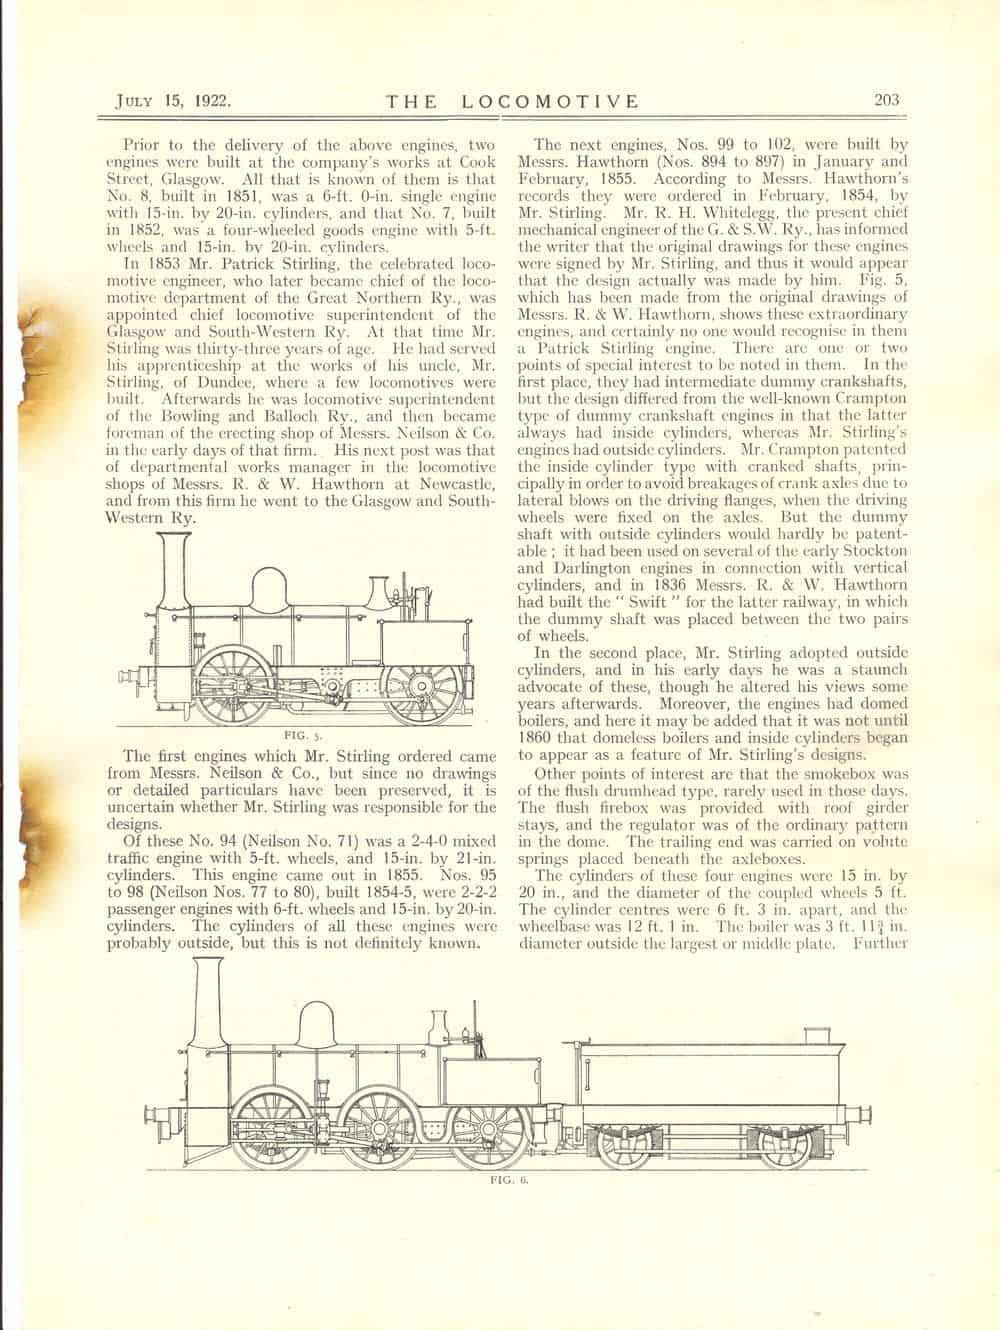 Locomotive Magazine V28 p203